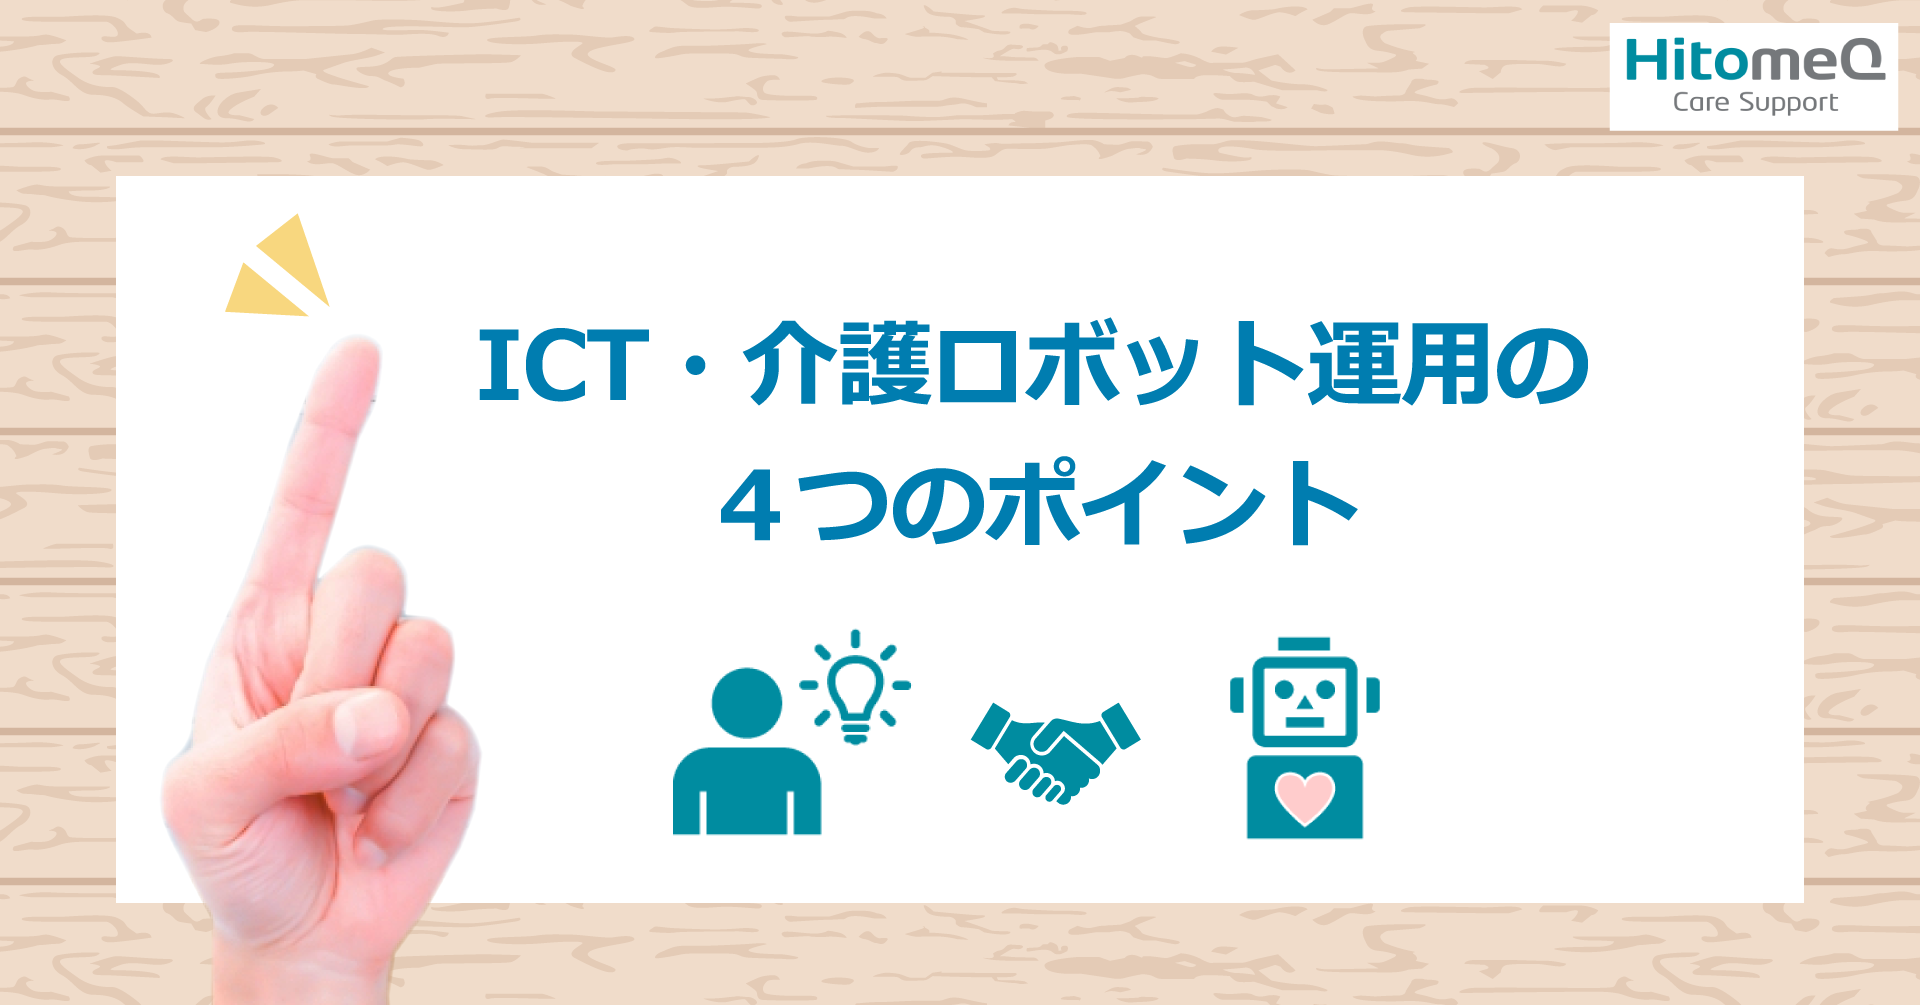 ICT・介護ロボットの運用で大切な4つのポイント